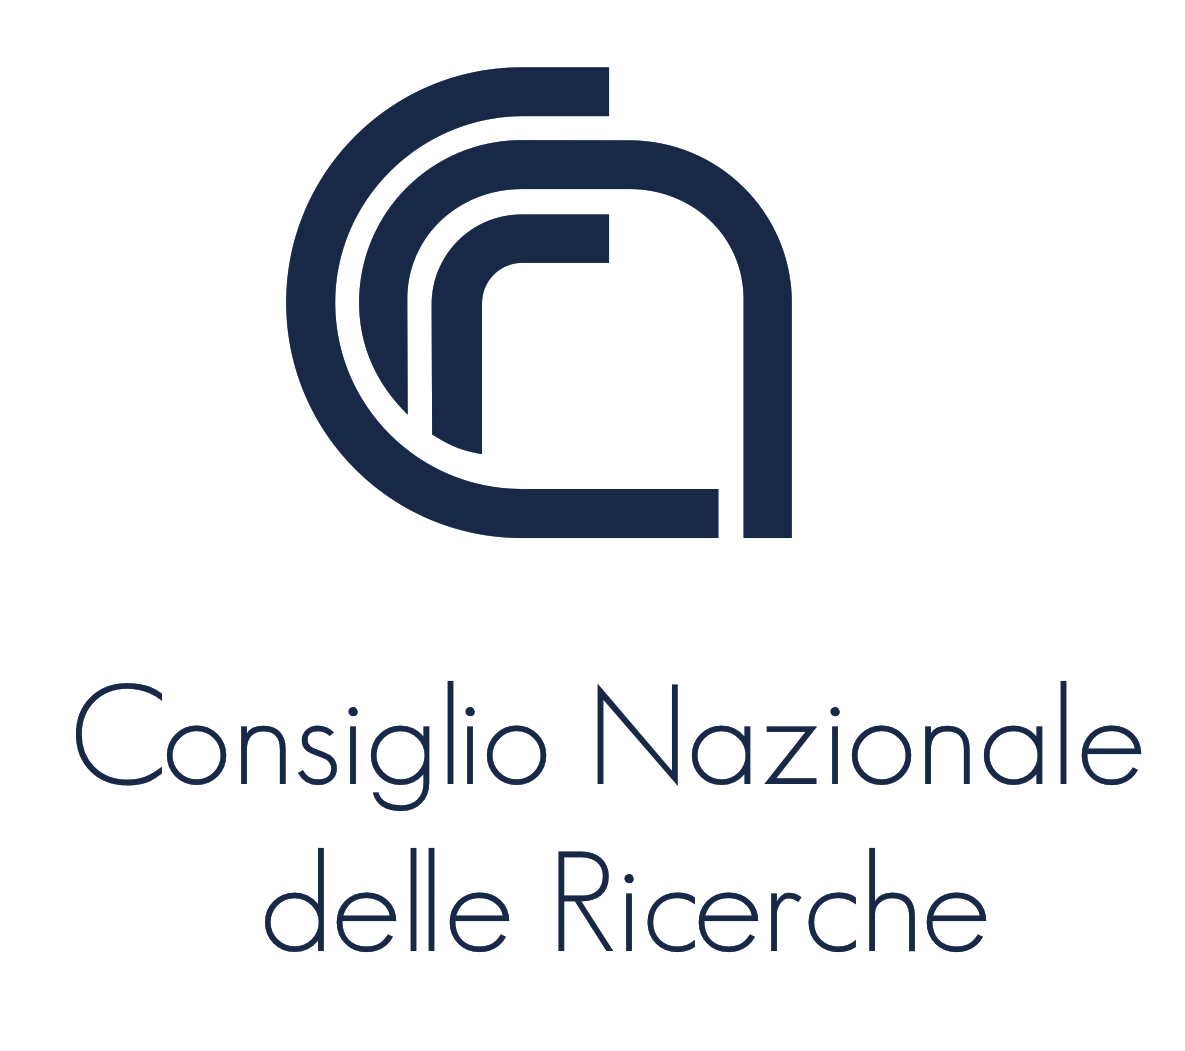 http://www.net4info.de/photos/cpg/albums/userpics/10001/Consiglio_Nazionale_delle_Ricerche2CCNR.png